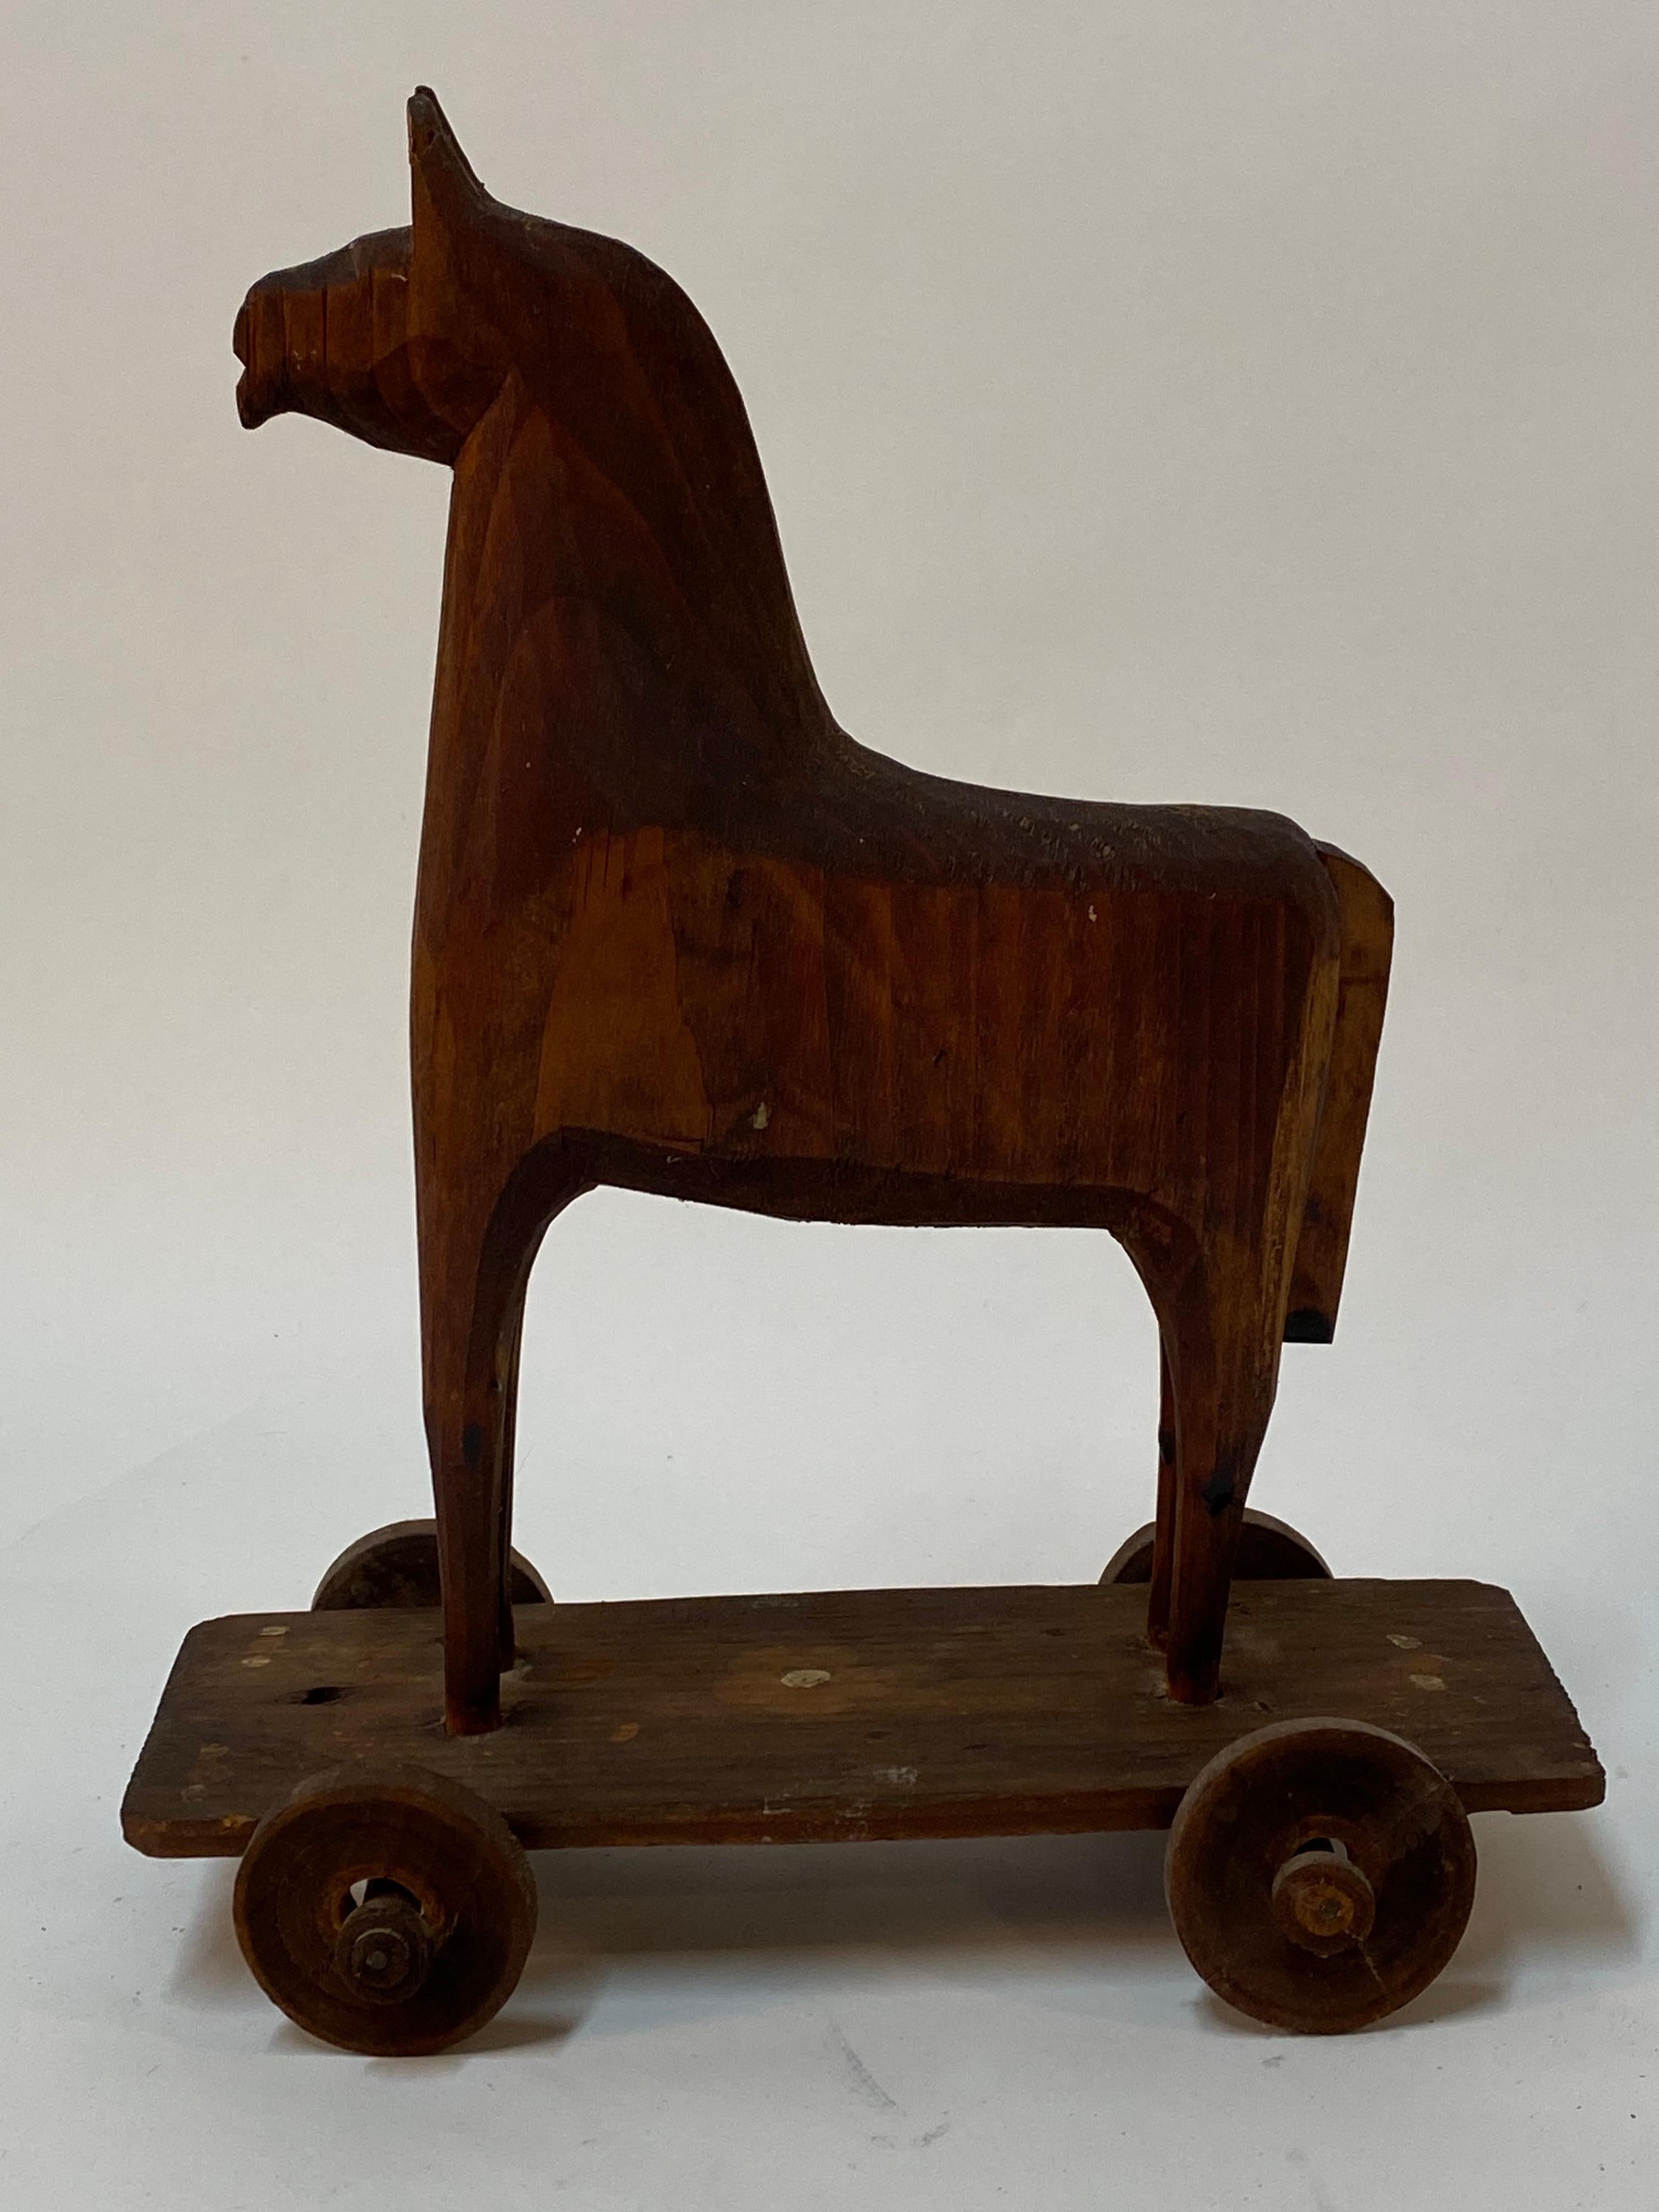 Fantastique jouet à tirer en bois sculpté, fabriqué à la main. Il est possible qu'il ait été fabriqué à partir de bouts de bois pendant la Grande Dépression et qu'il ressemble à une sorte de cheval de Troie. Pin sculpté. Quelques clous sont utilisés